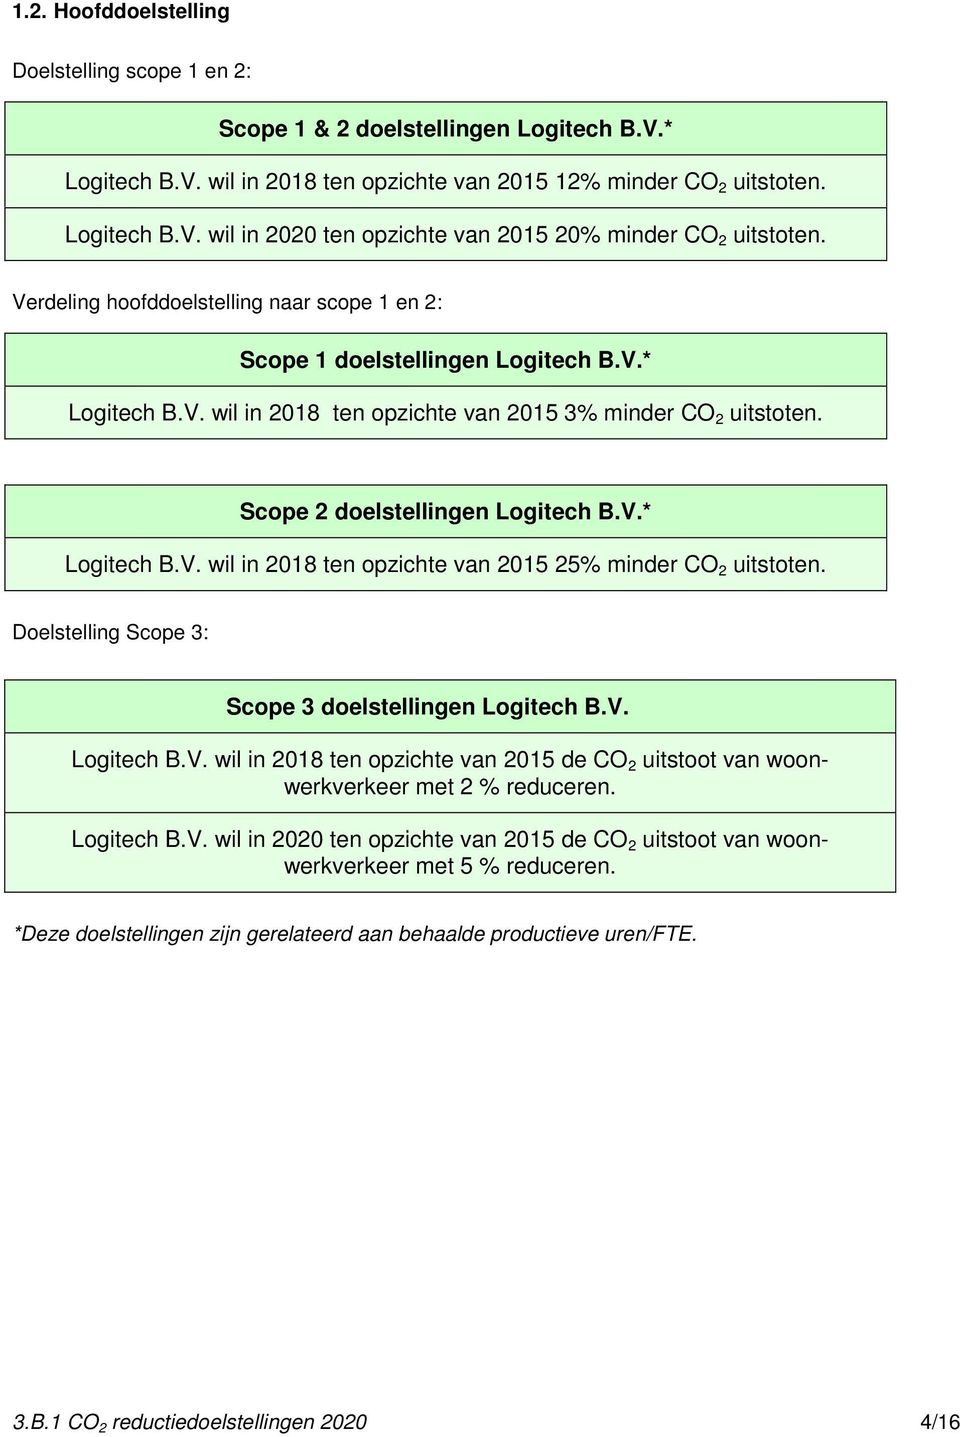 Doelstelling Scope 3: Scope 3 doelstellingen Logitech B.V. Logitech B.V. wil in 2018 ten opzichte van 2015 de CO 2 uitstoot van woonwerkverkeer met 2 % reduceren. Logitech B.V. wil in 2020 ten opzichte van 2015 de CO 2 uitstoot van woonwerkverkeer met 5 % reduceren.